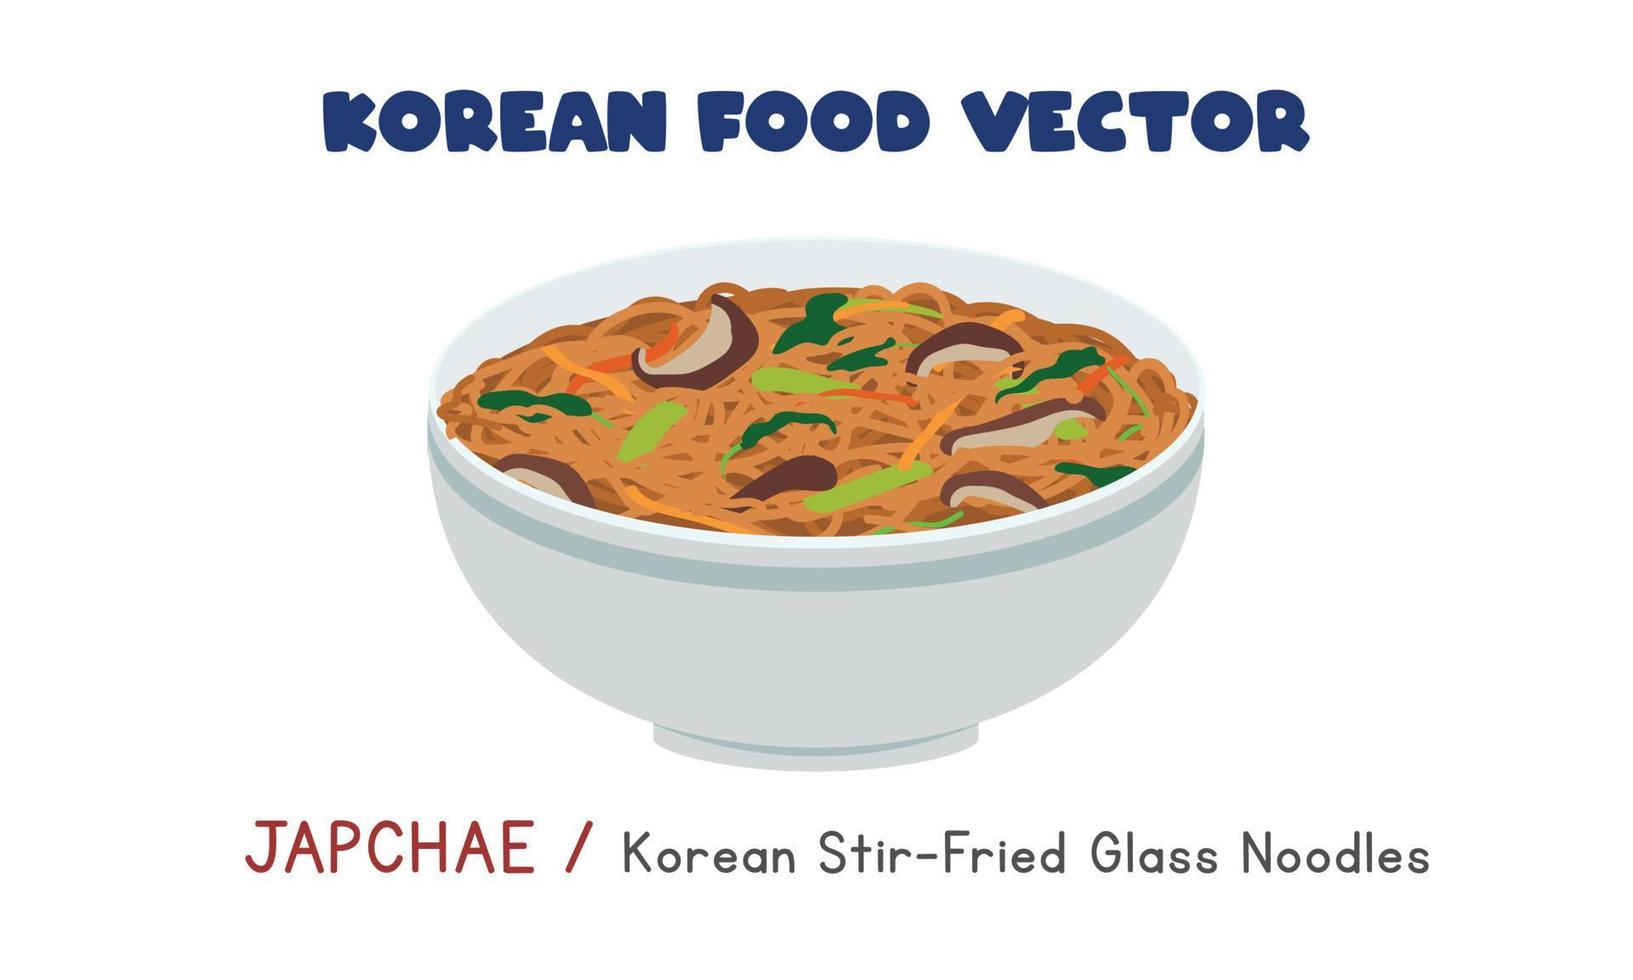 koreanische japchae - koreanische gebratene glasnudeln flache vektordesignillustration, clipart-karikaturart. asiatisches Essen. koreanische Küche. Koreanisches Essen vektor